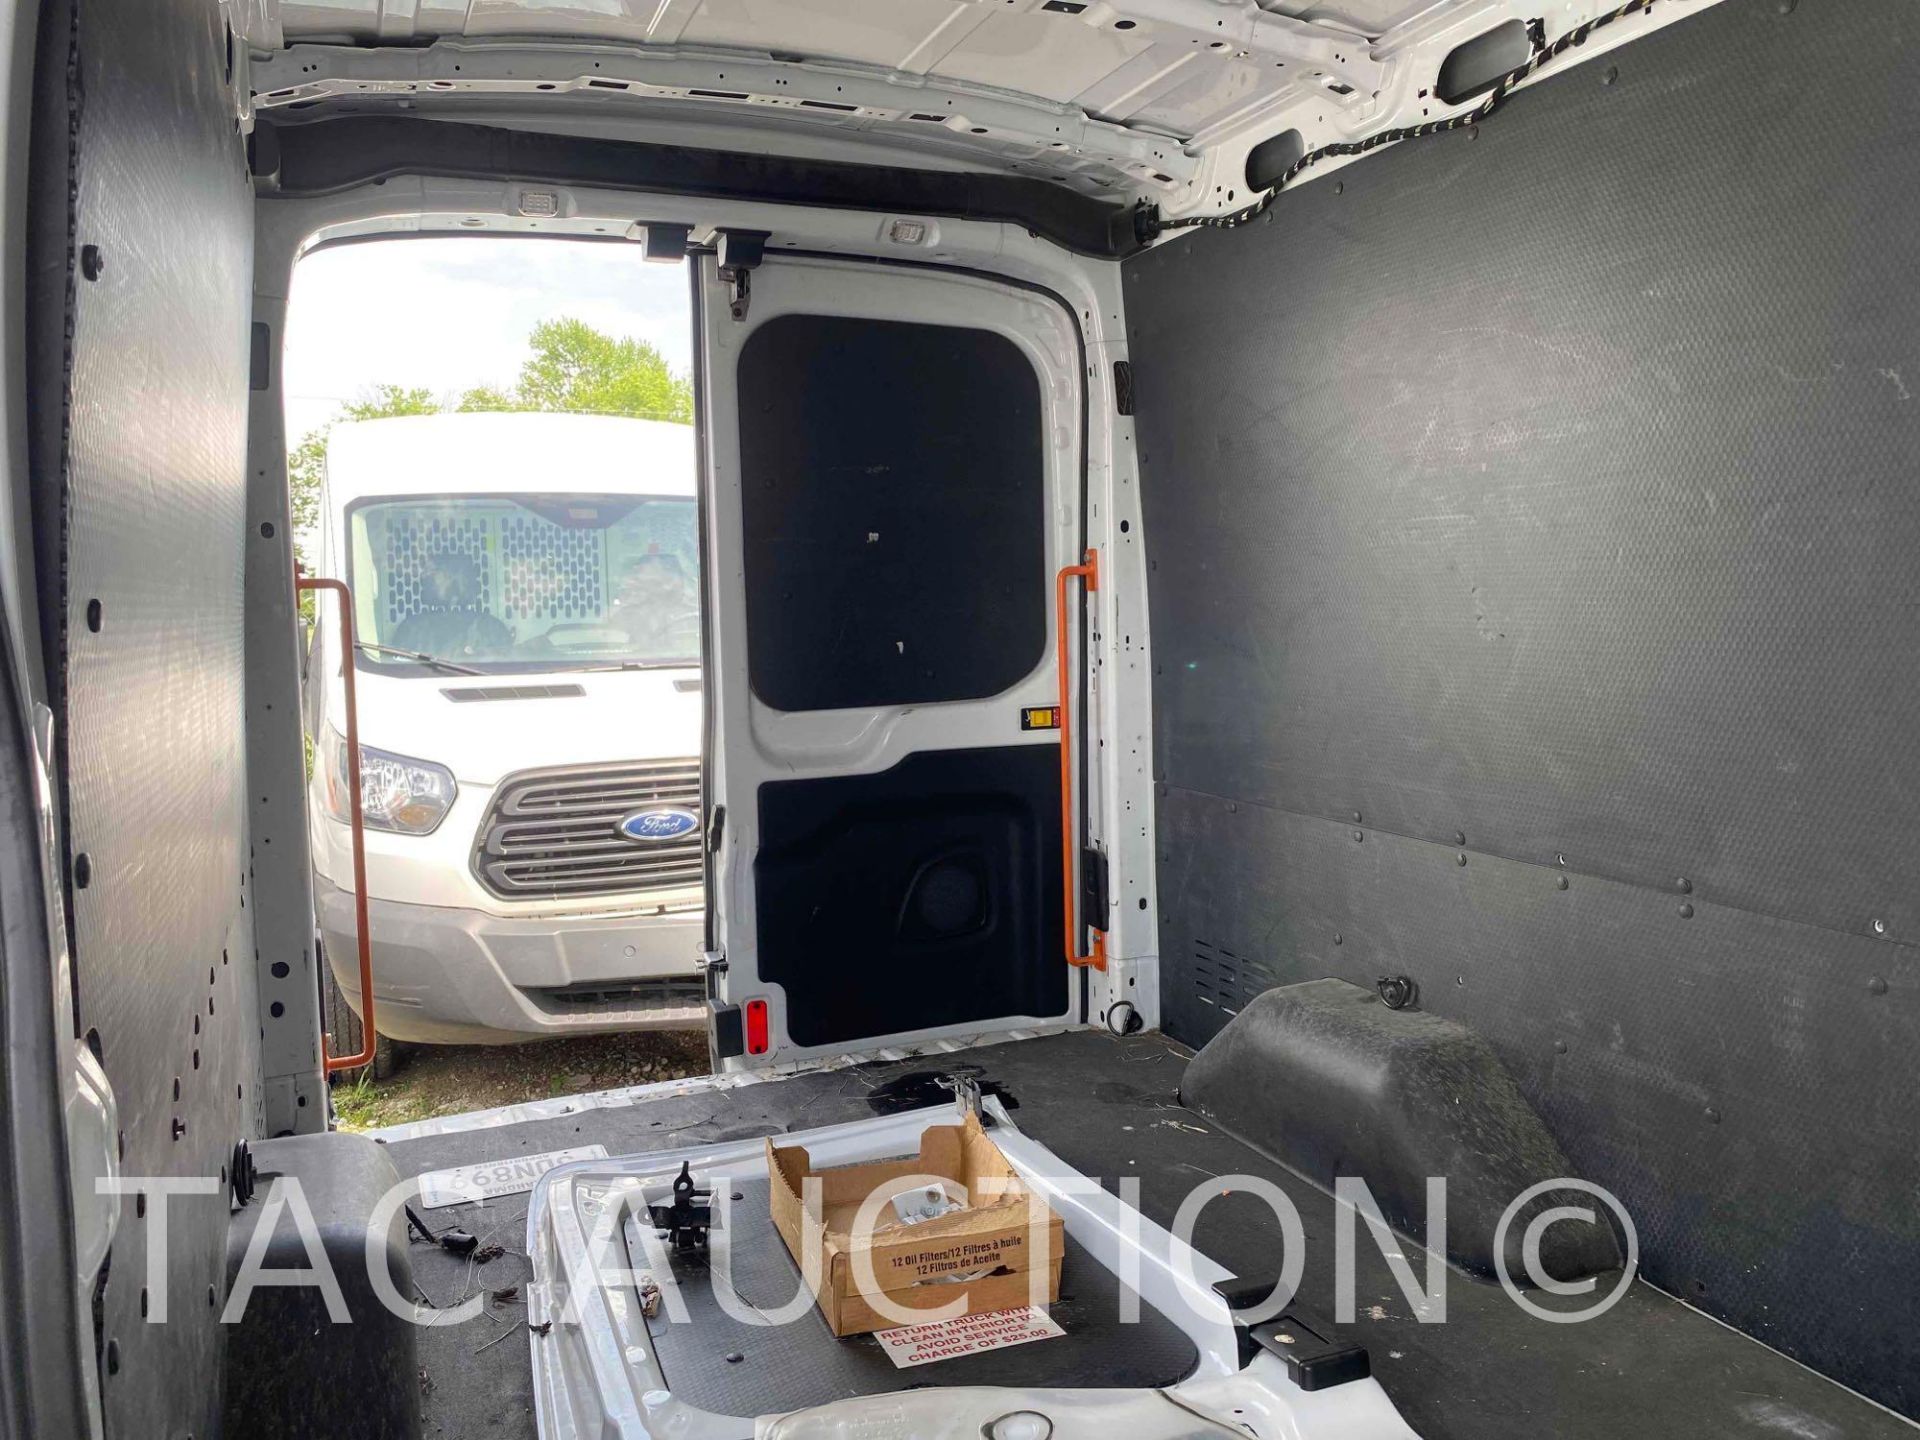 2019 Ford Transit 150 Cargo Van - Image 28 of 48